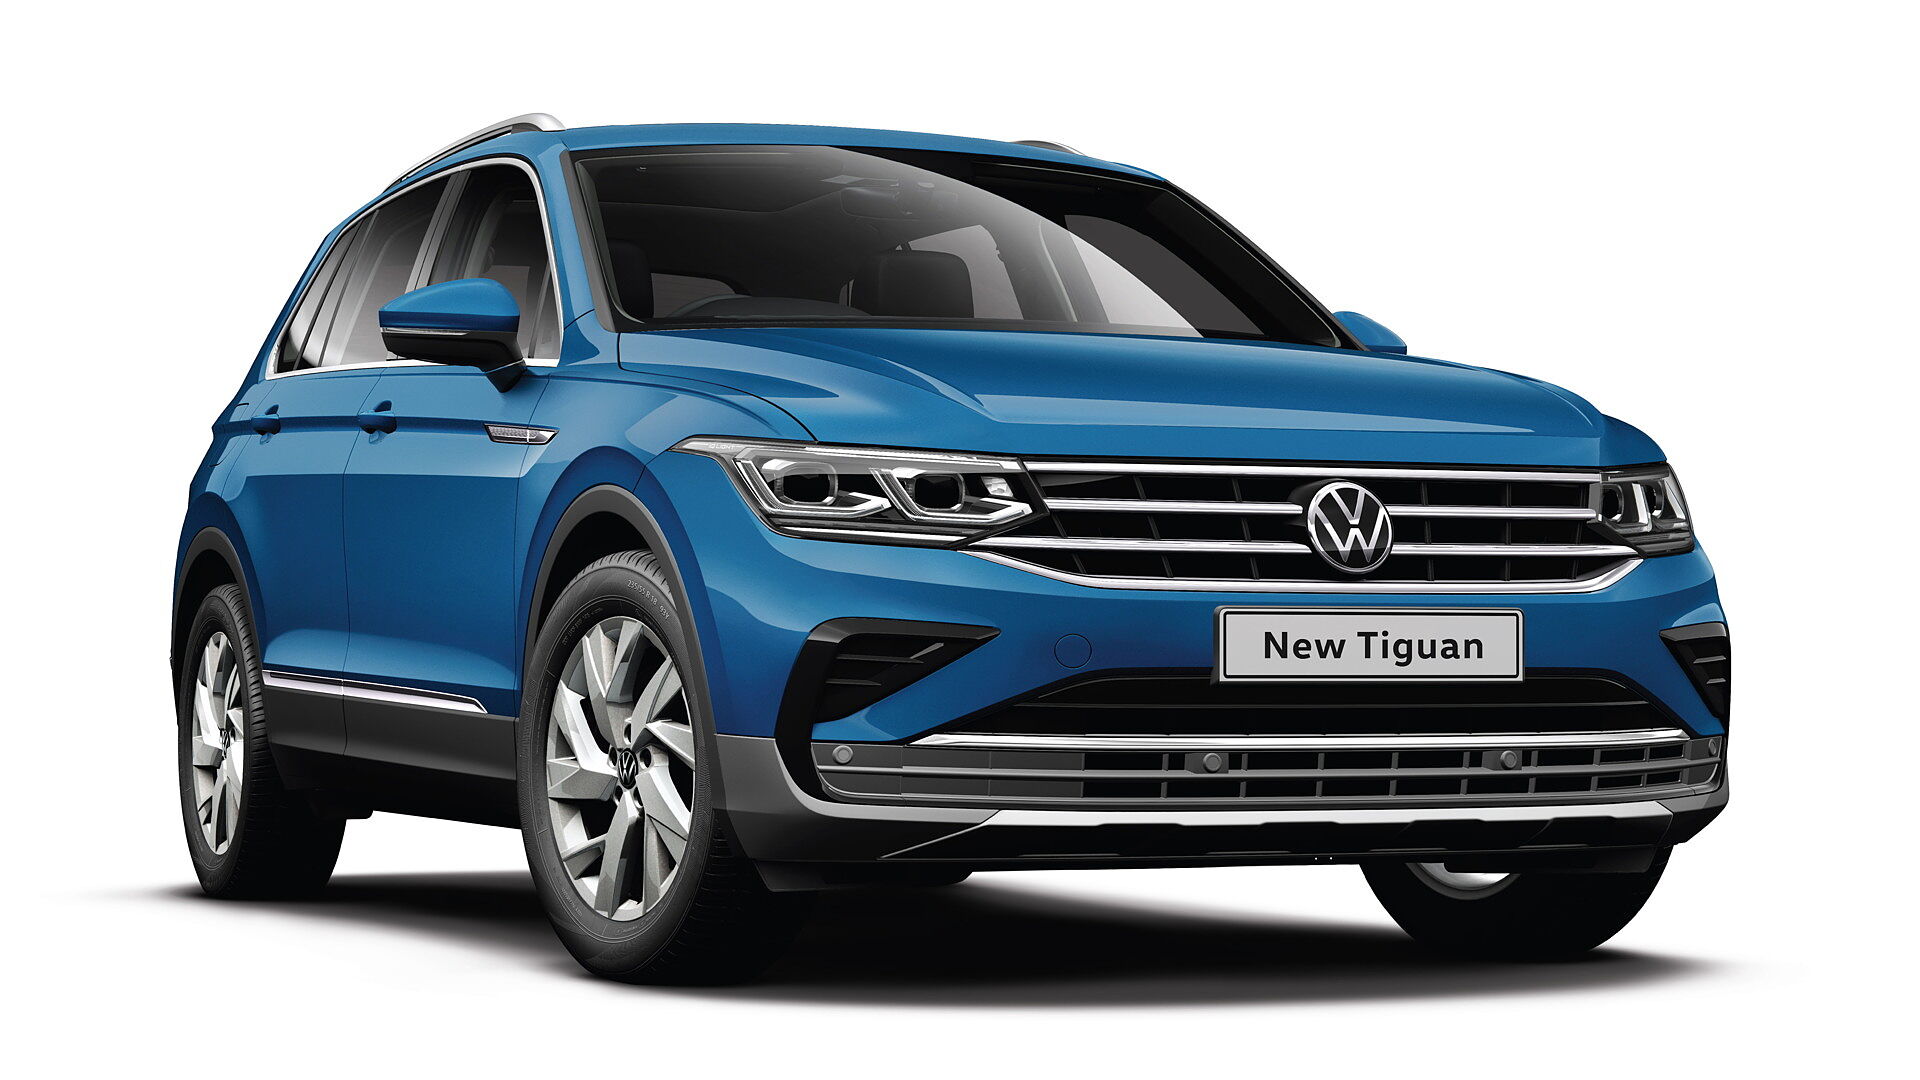 Volkswagen Tiguan Car Cover - Best Car Cover for Volkswagen Tiguan